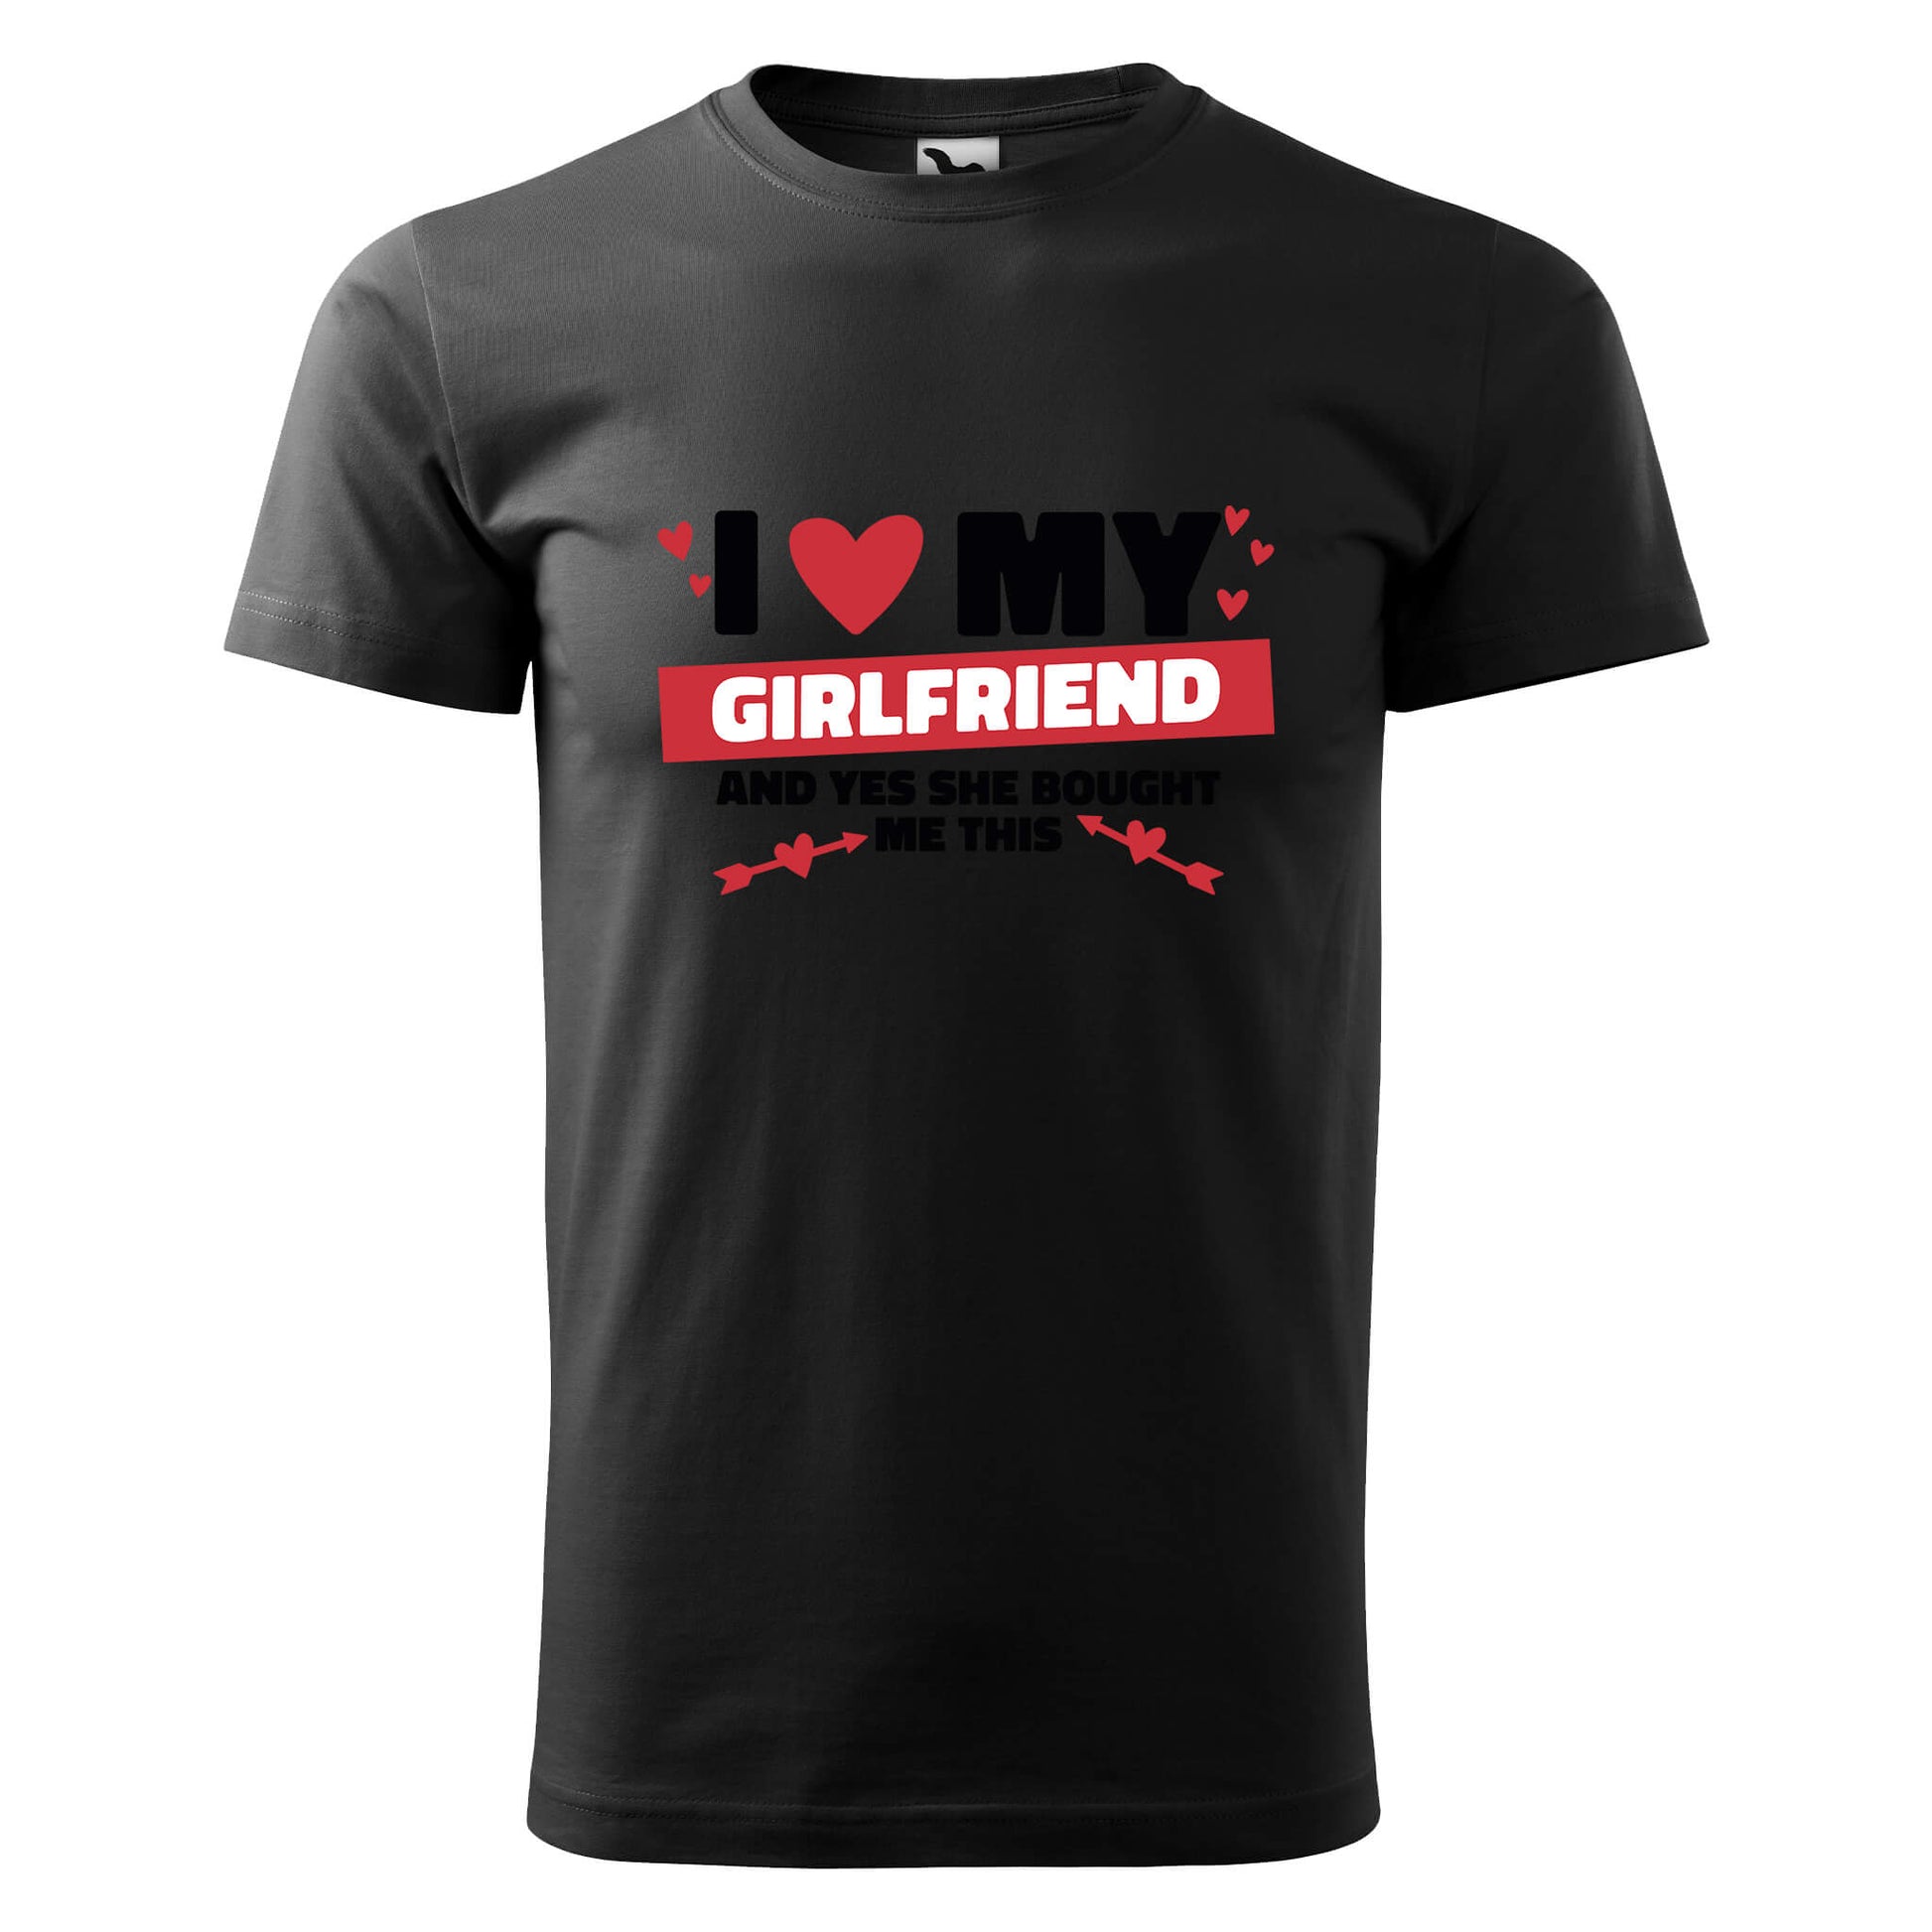 Love my girlfriend t-shirt - rvdesignprint